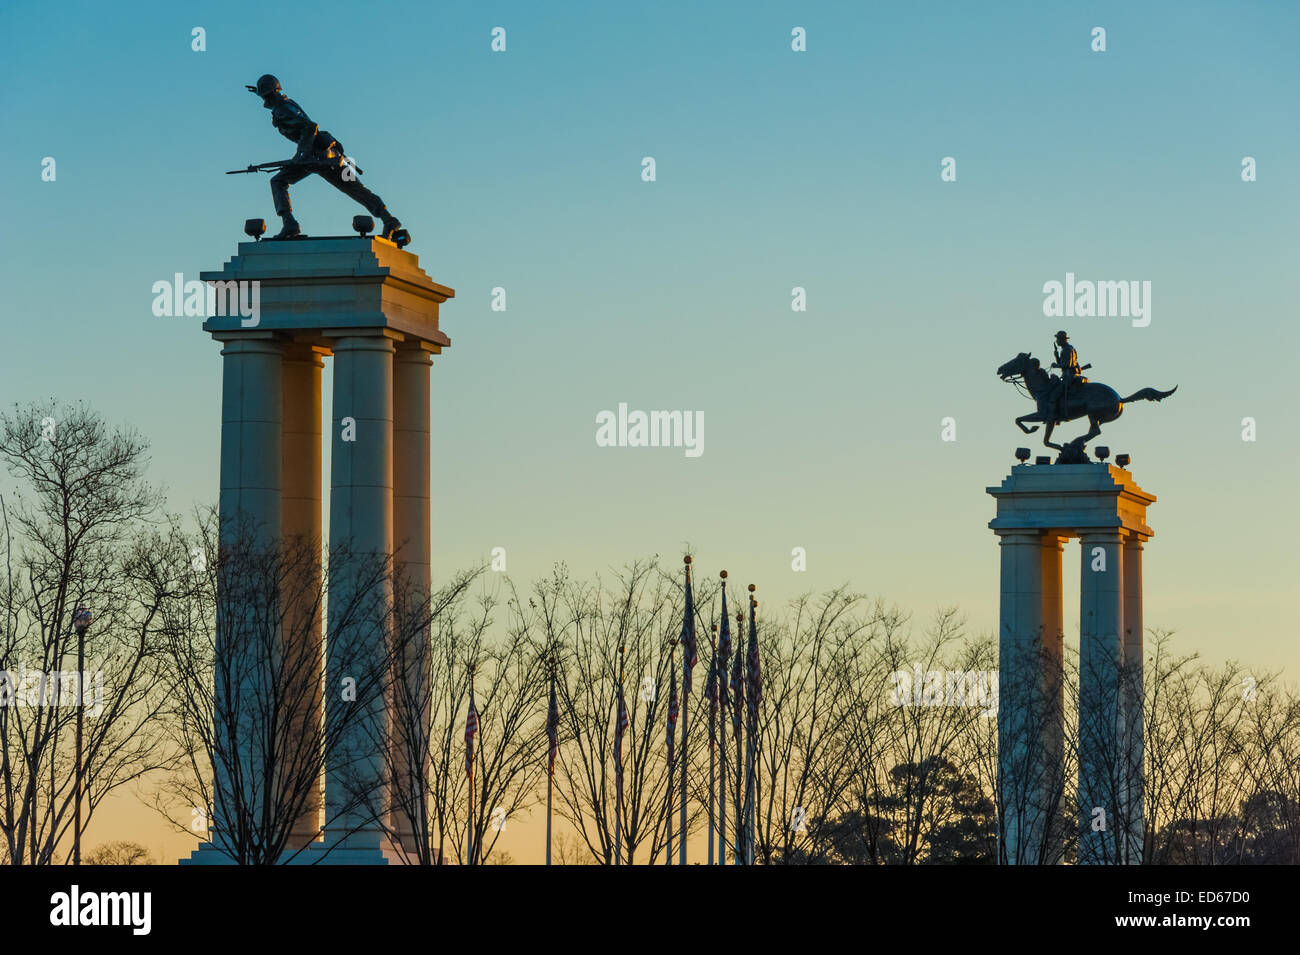 Imponenti monumenti in corrispondenza del gateway in entrata al Fort Benning Army base stand tall nelle prime luci dell'alba. Foto Stock